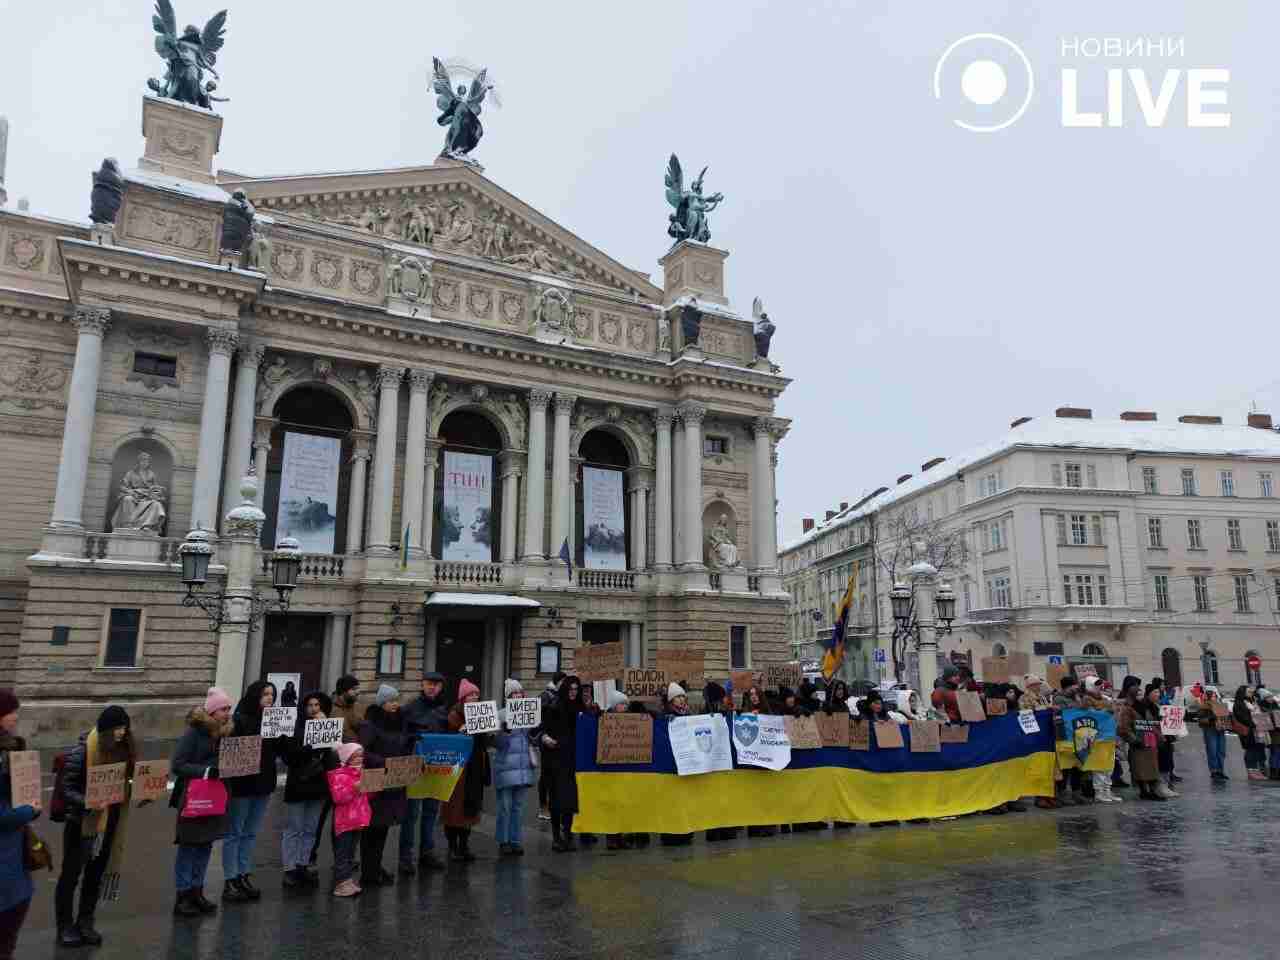 «Не мовчи! Полон вбиває!»: у Львові нагадали про полонених захисників (ФОТО)